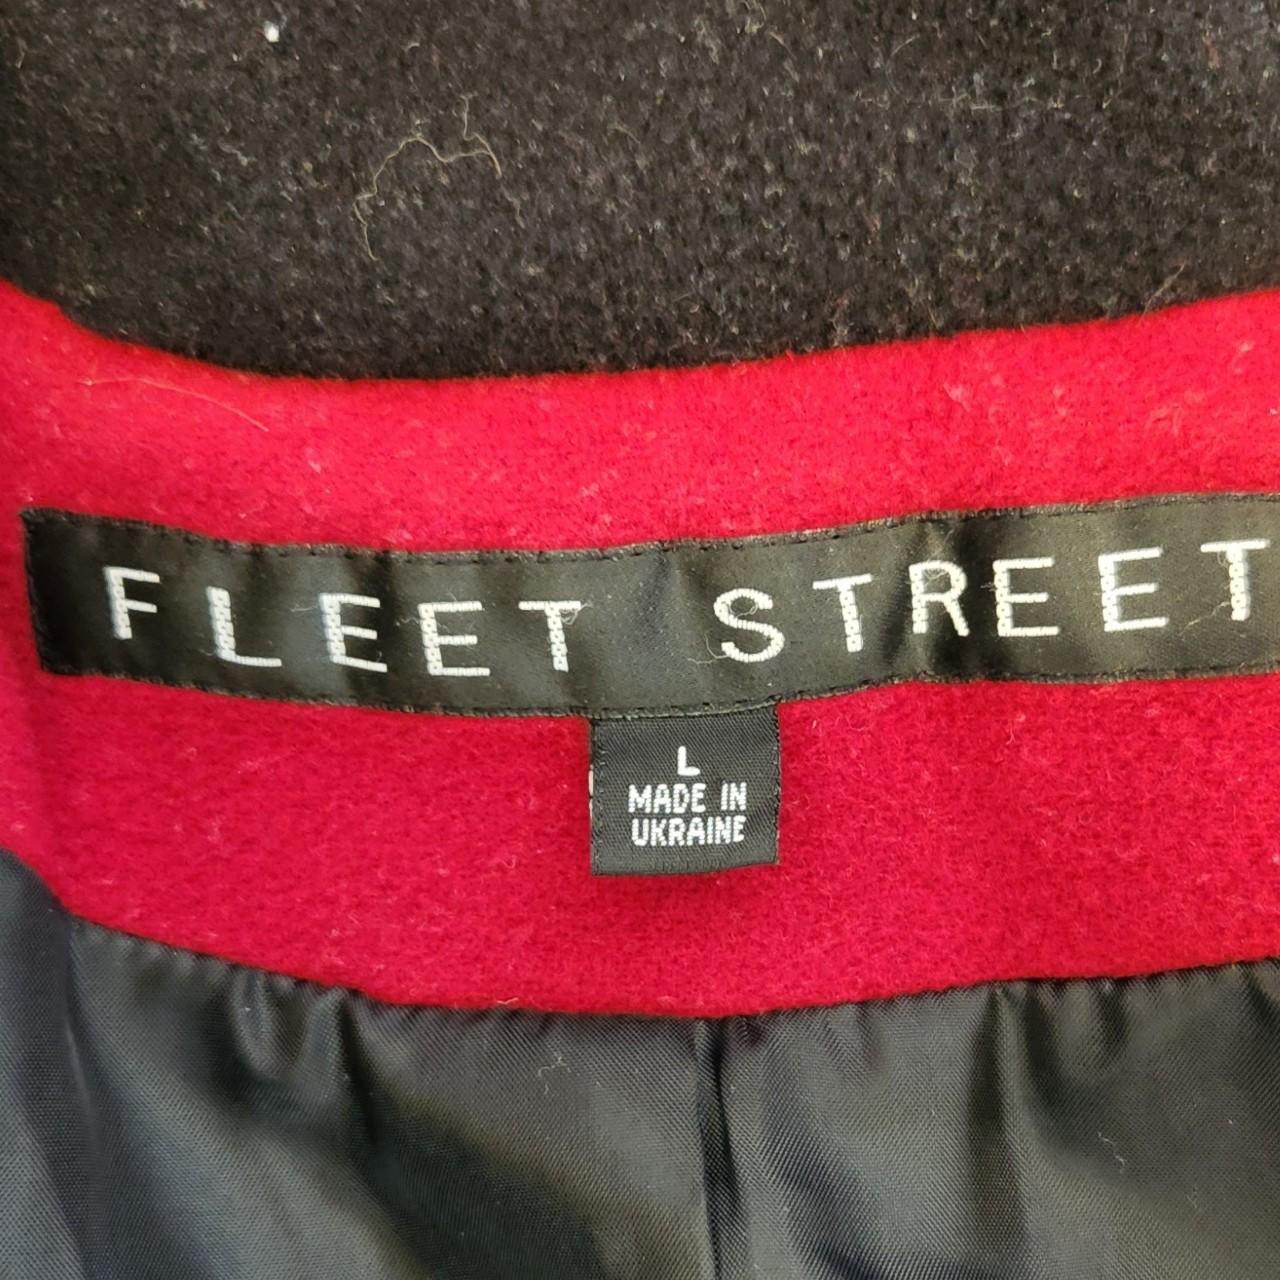 Fleet Street Wool Blend coat Size L 80% Wool, 20%... - Depop